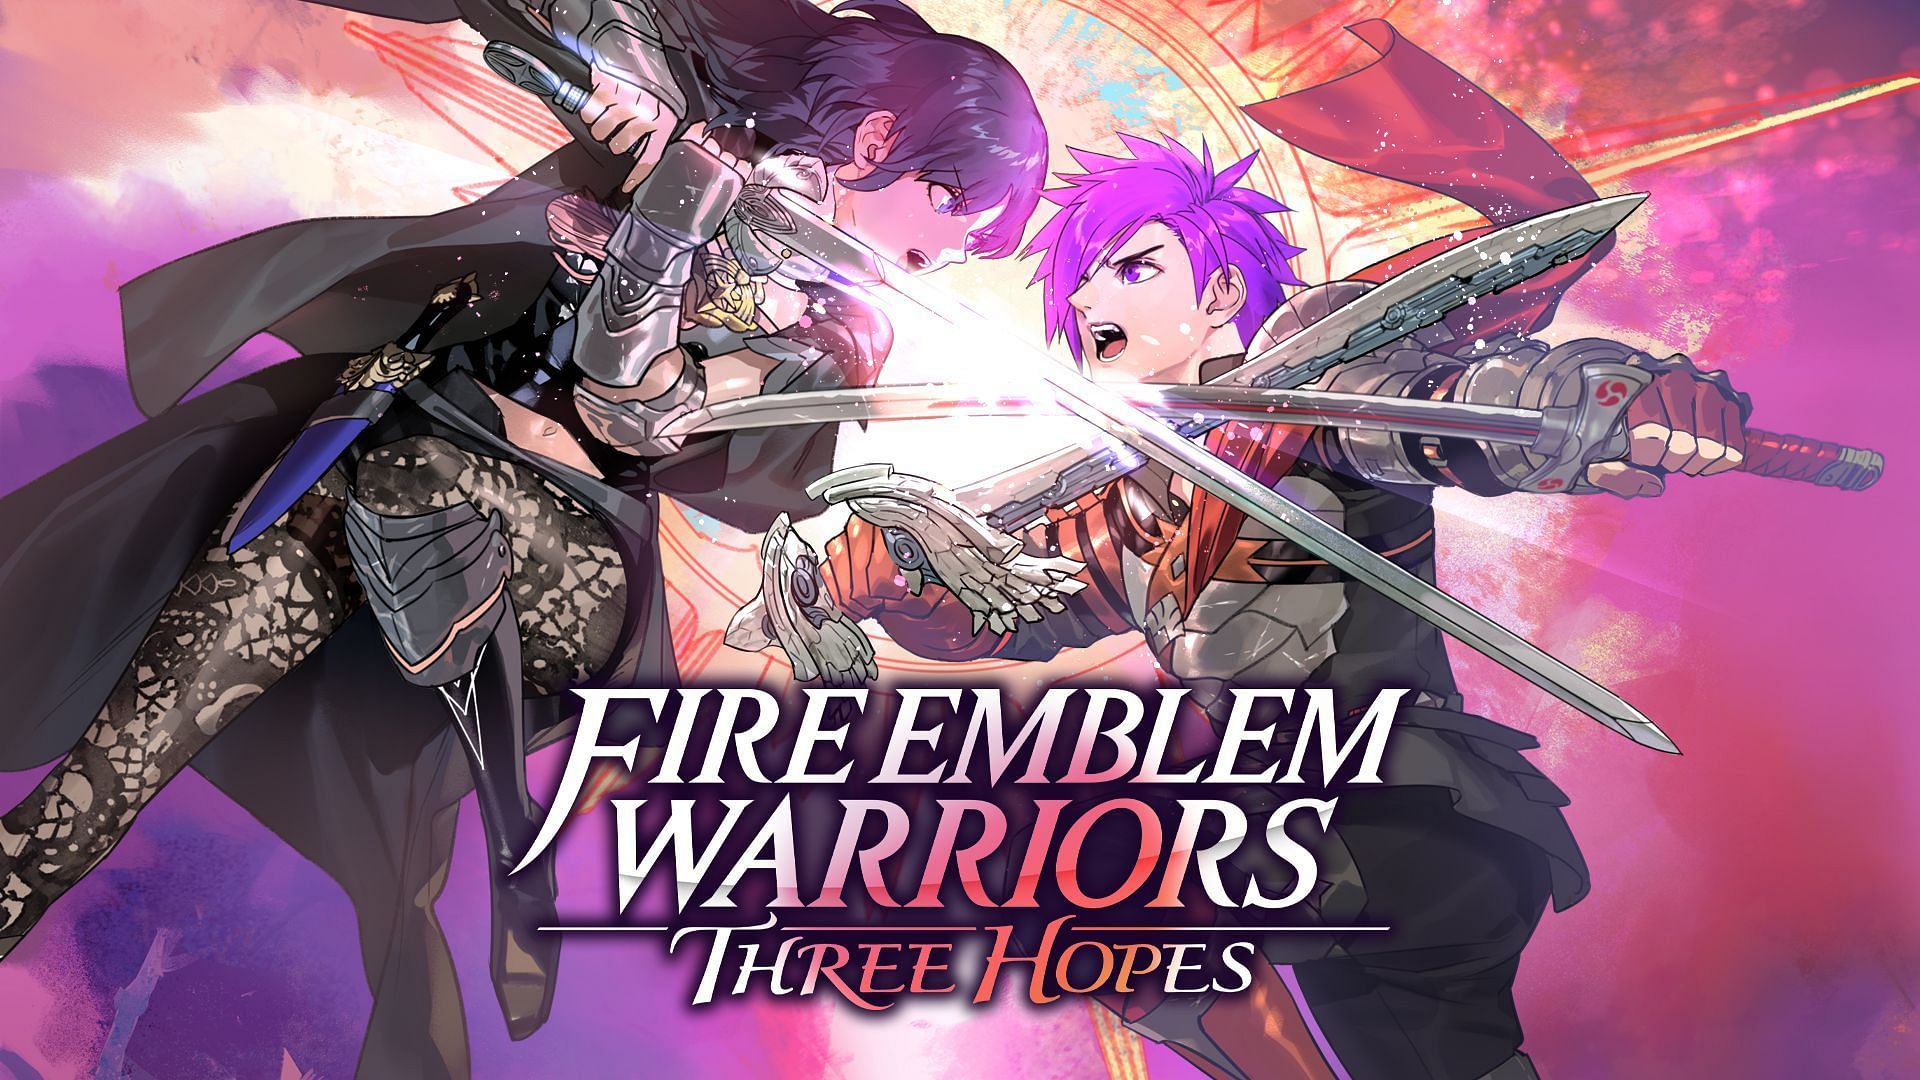 Official artwork for Fire Emblem Warriors: Three Hopes (Image via Nintendo)